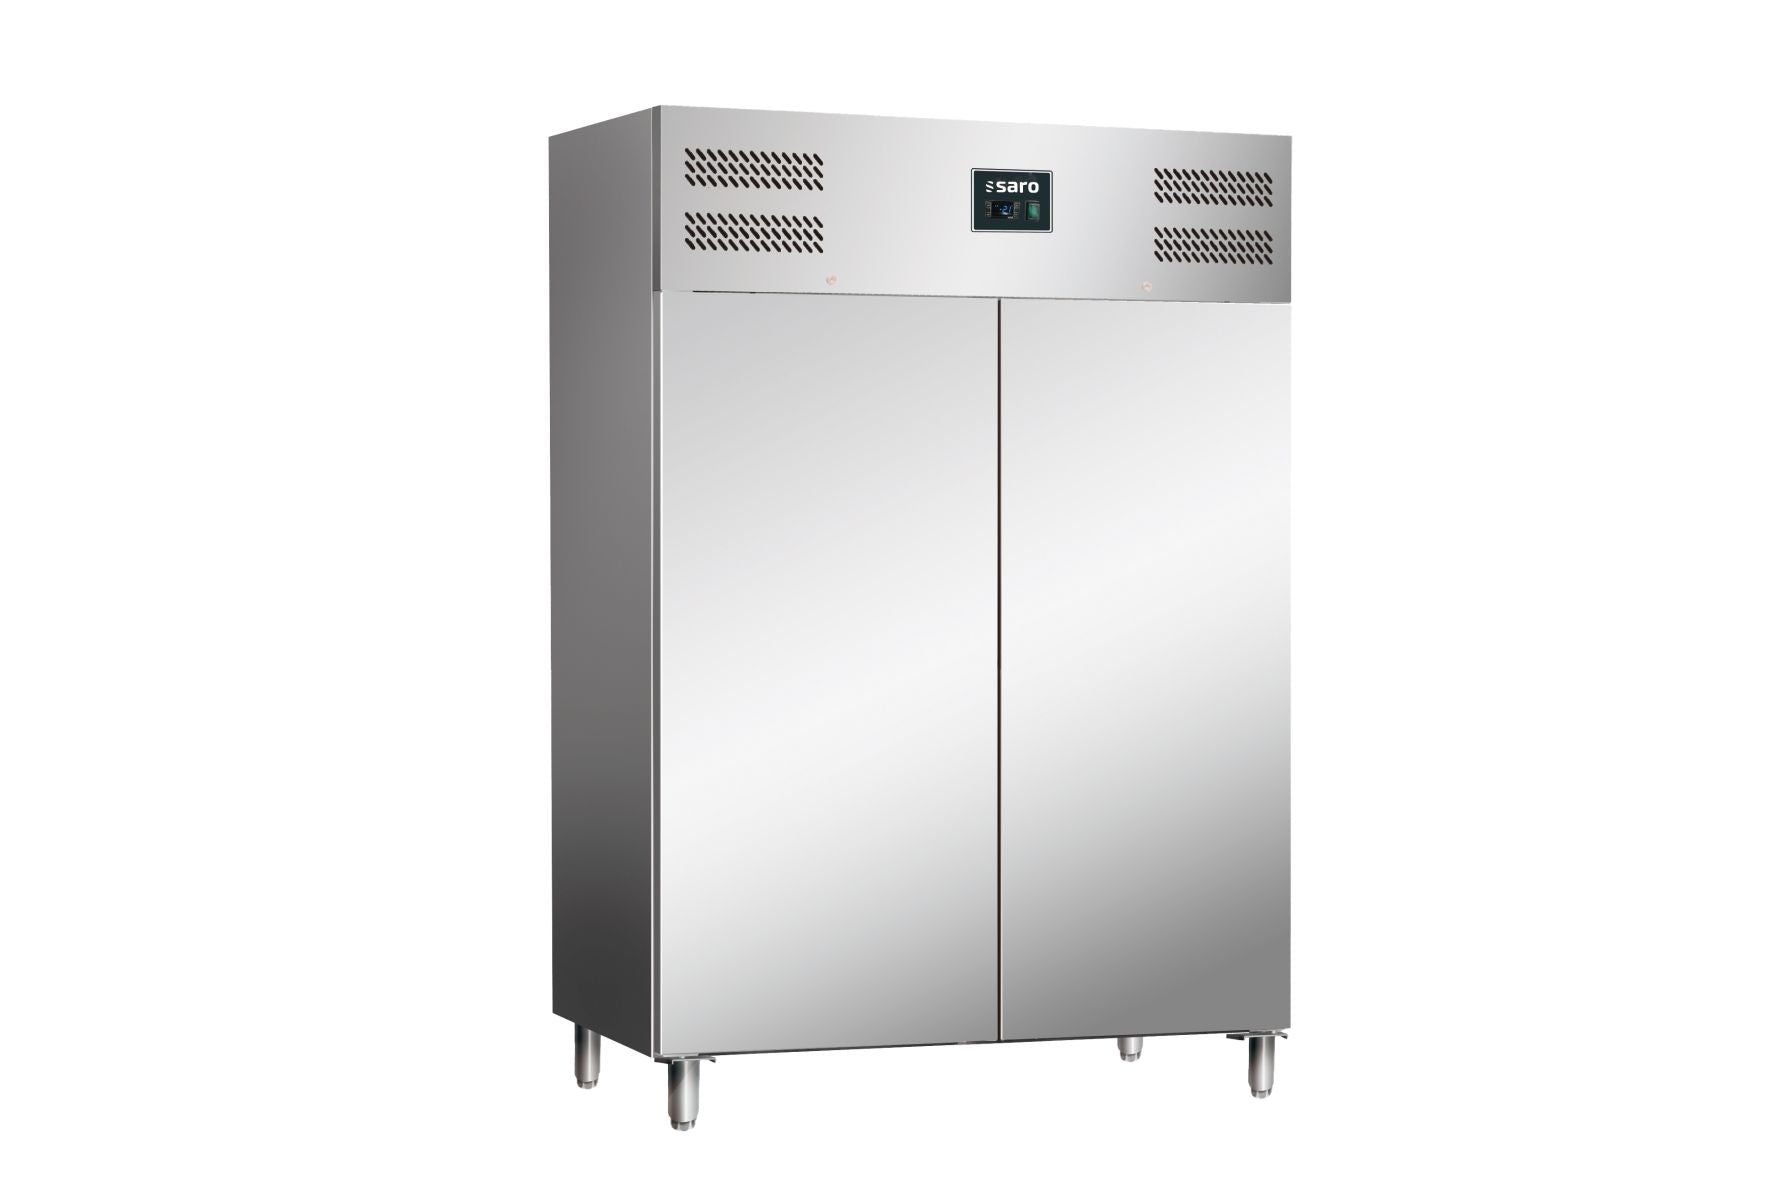 Billede af SARO Kommercielt køleskab, 2 døre, 2/1 GN, model TORE G